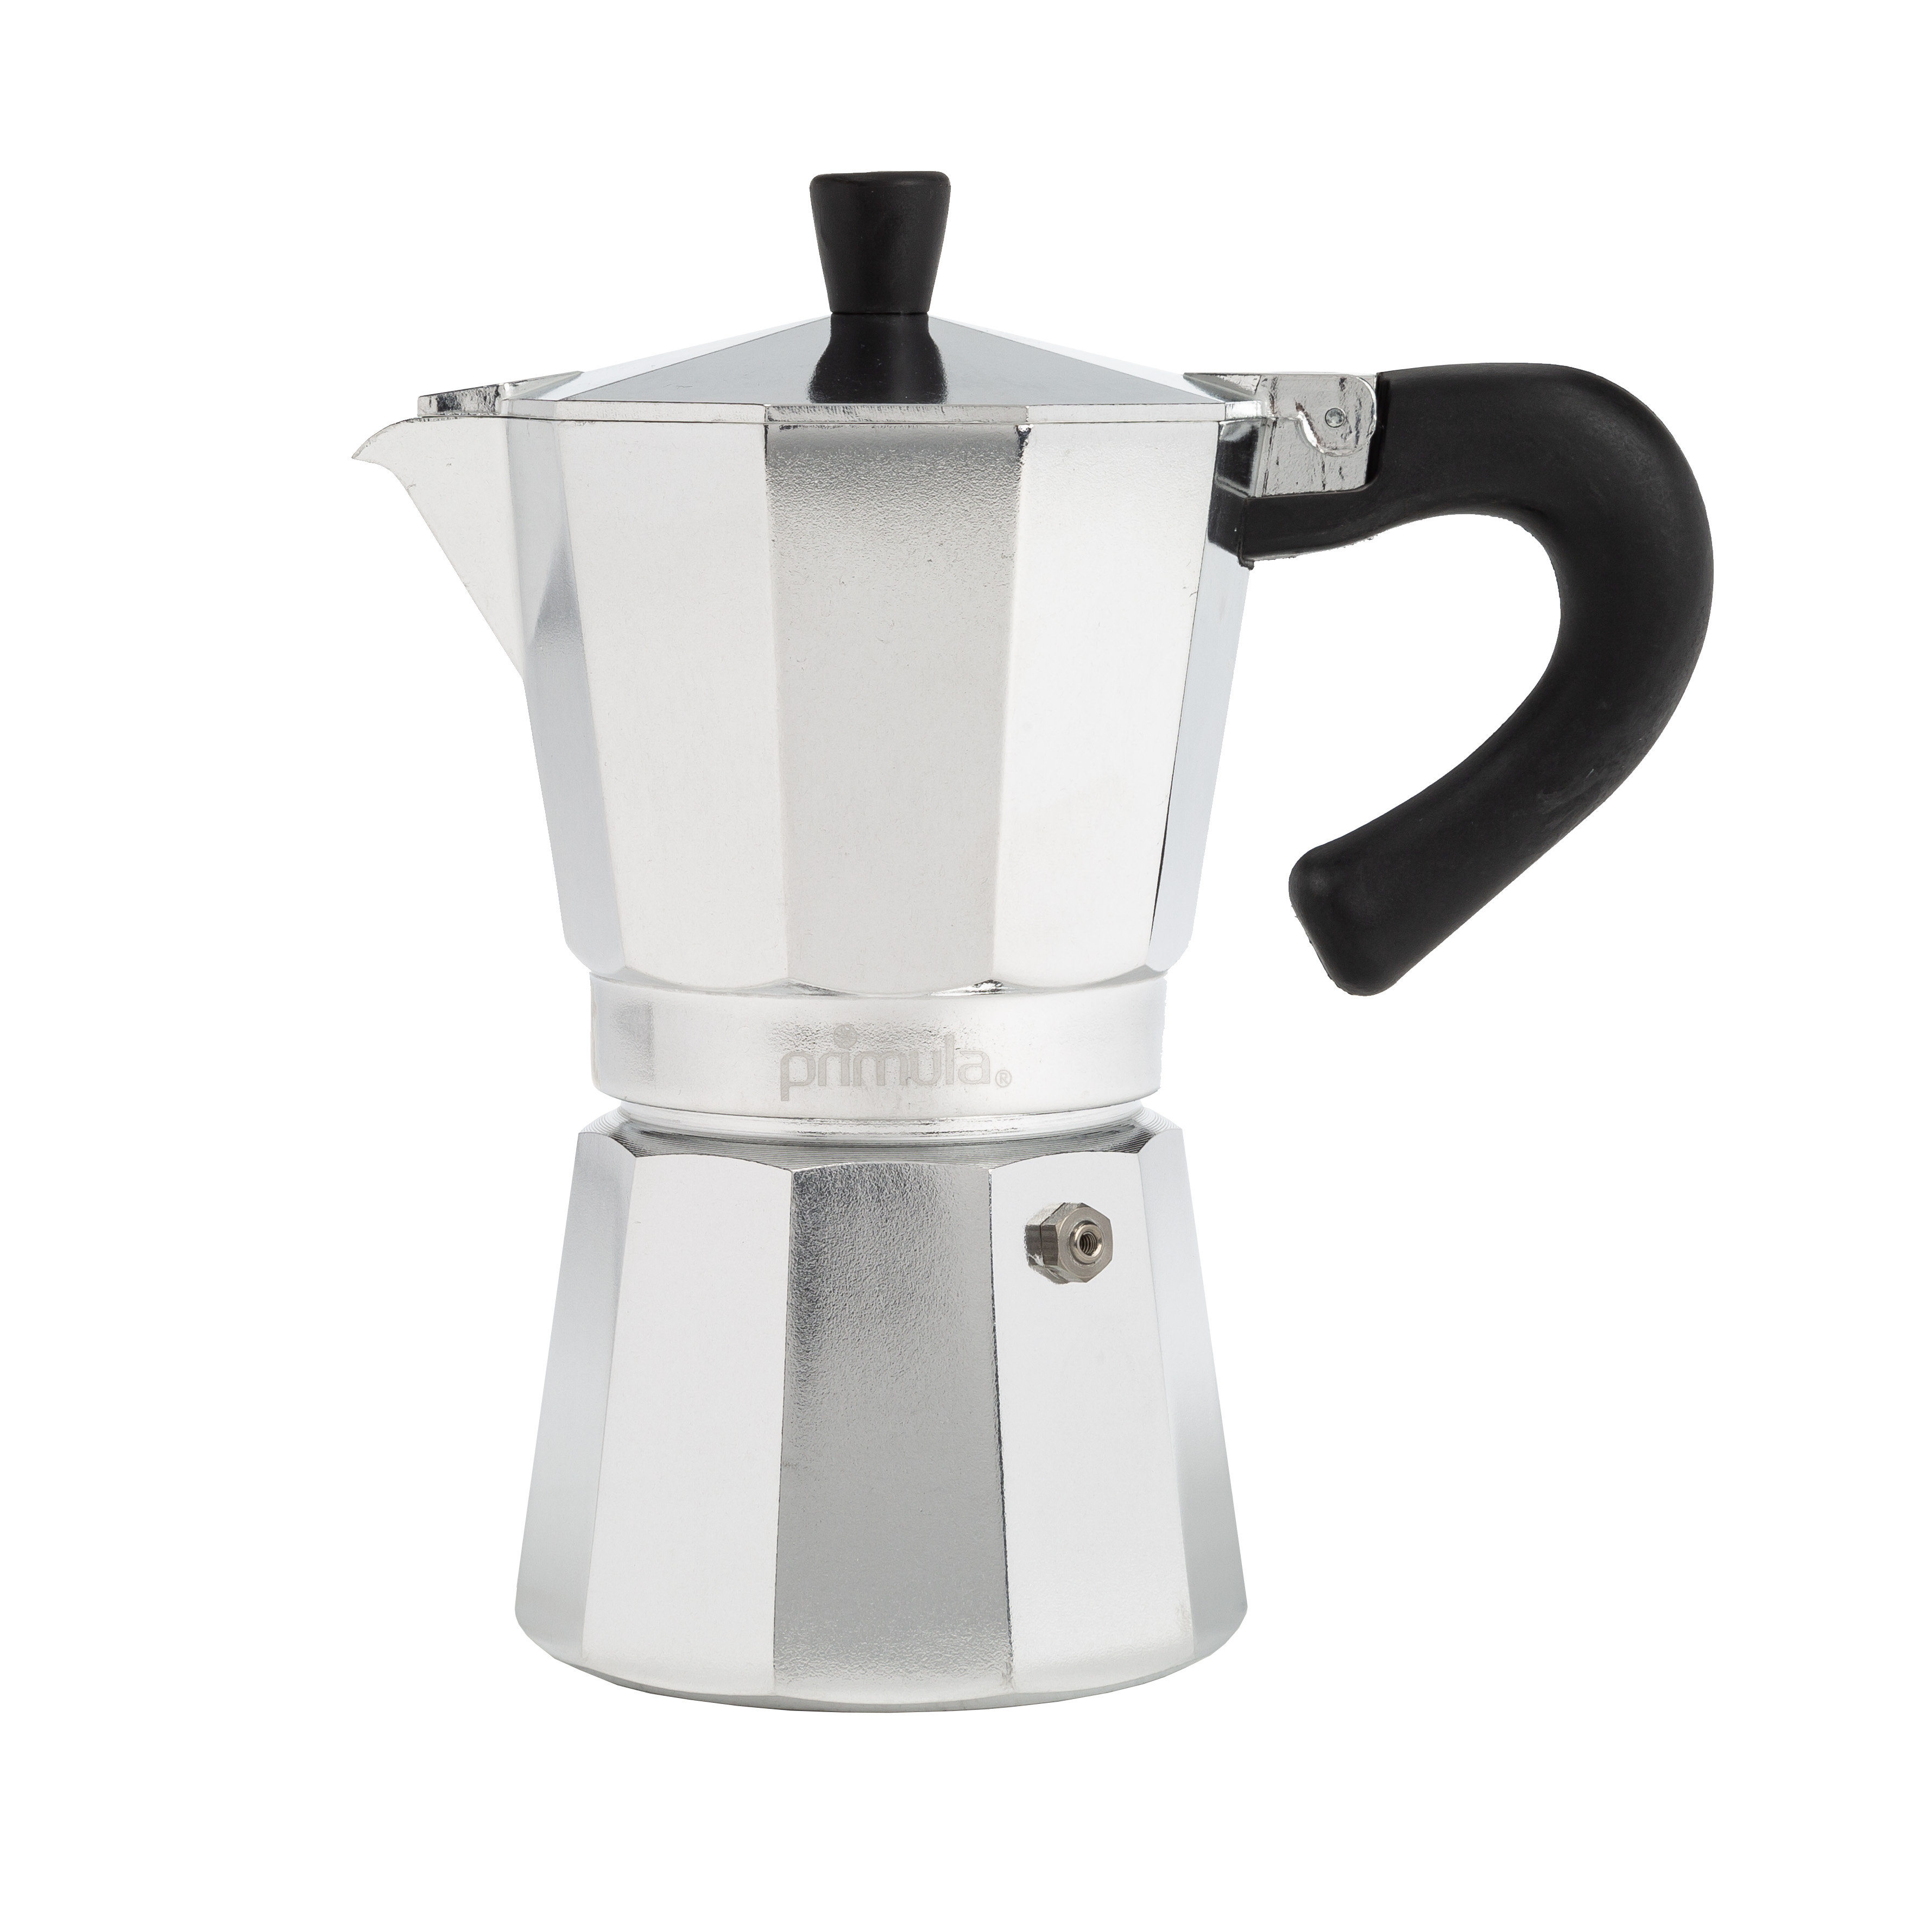 https://assets.wfcdn.com/im/10313875/compr-r85/2373/237308767/primula-stovetop-espresso-maker.jpg